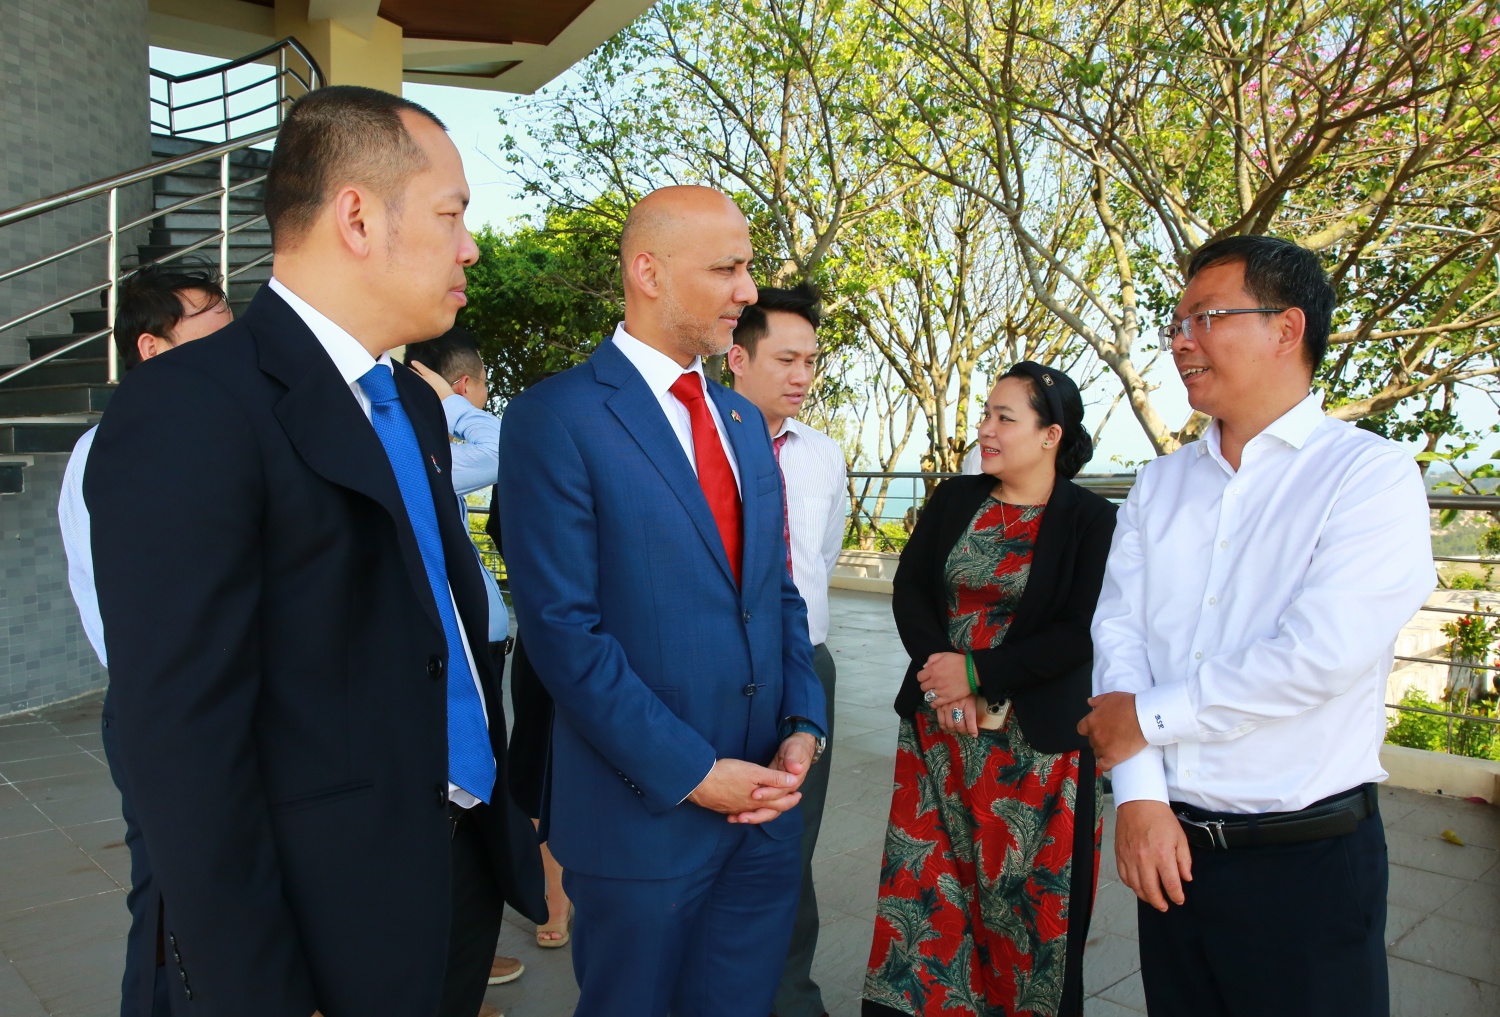 Đại sứ UAE tại Việt Nam thăm và làm việc với BSR